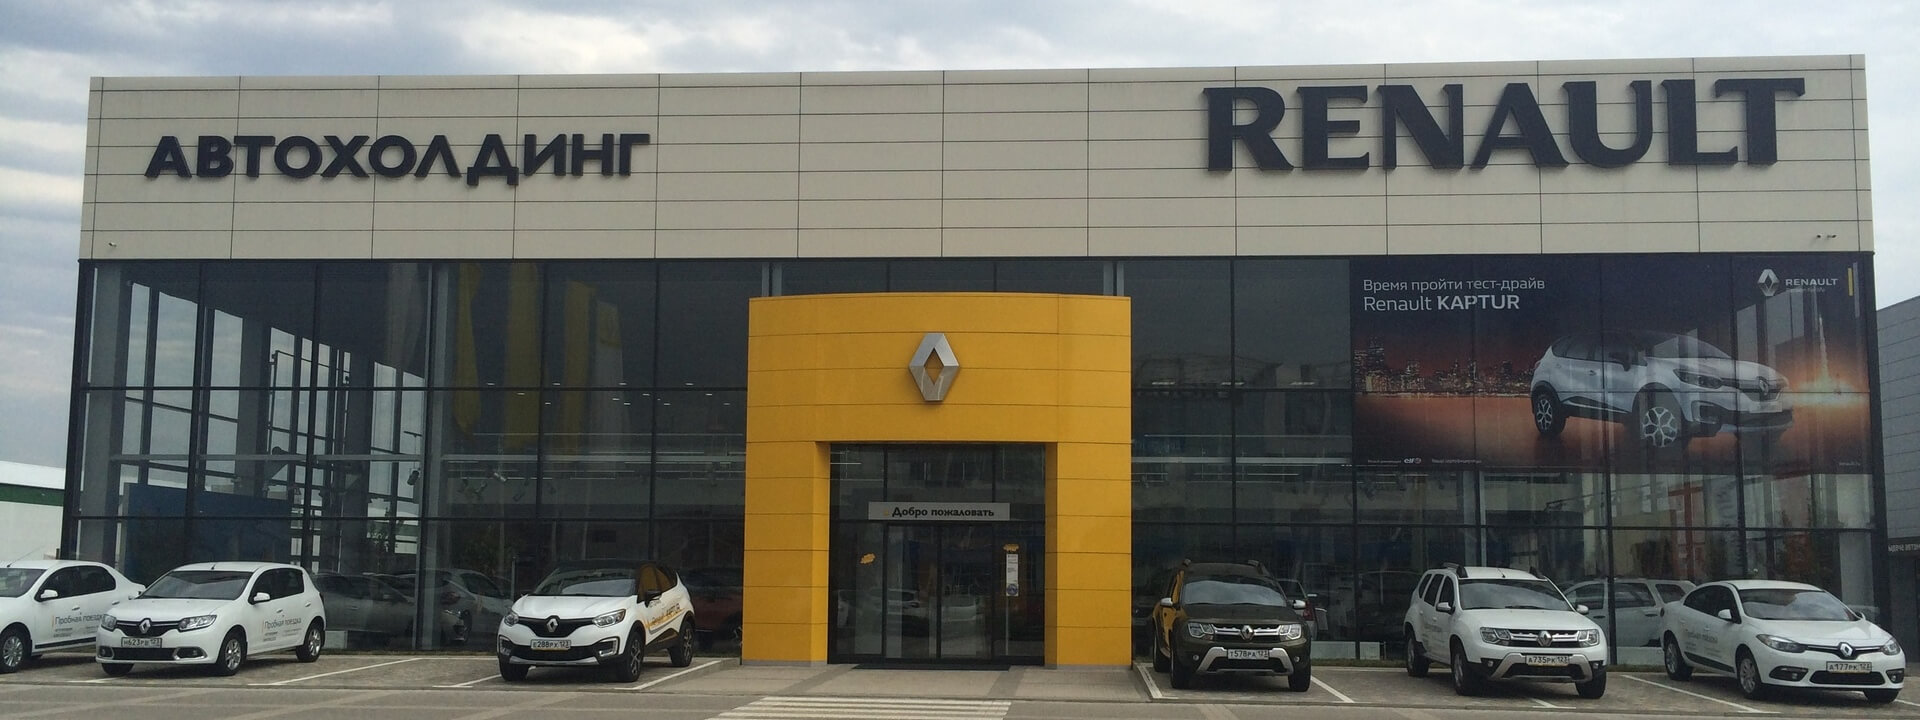 Ремонт Renault Clio — сервис, ремонт и техническое обслуживание (ТО) автомобилей Рено Клио в автосервисе в Краснодаре